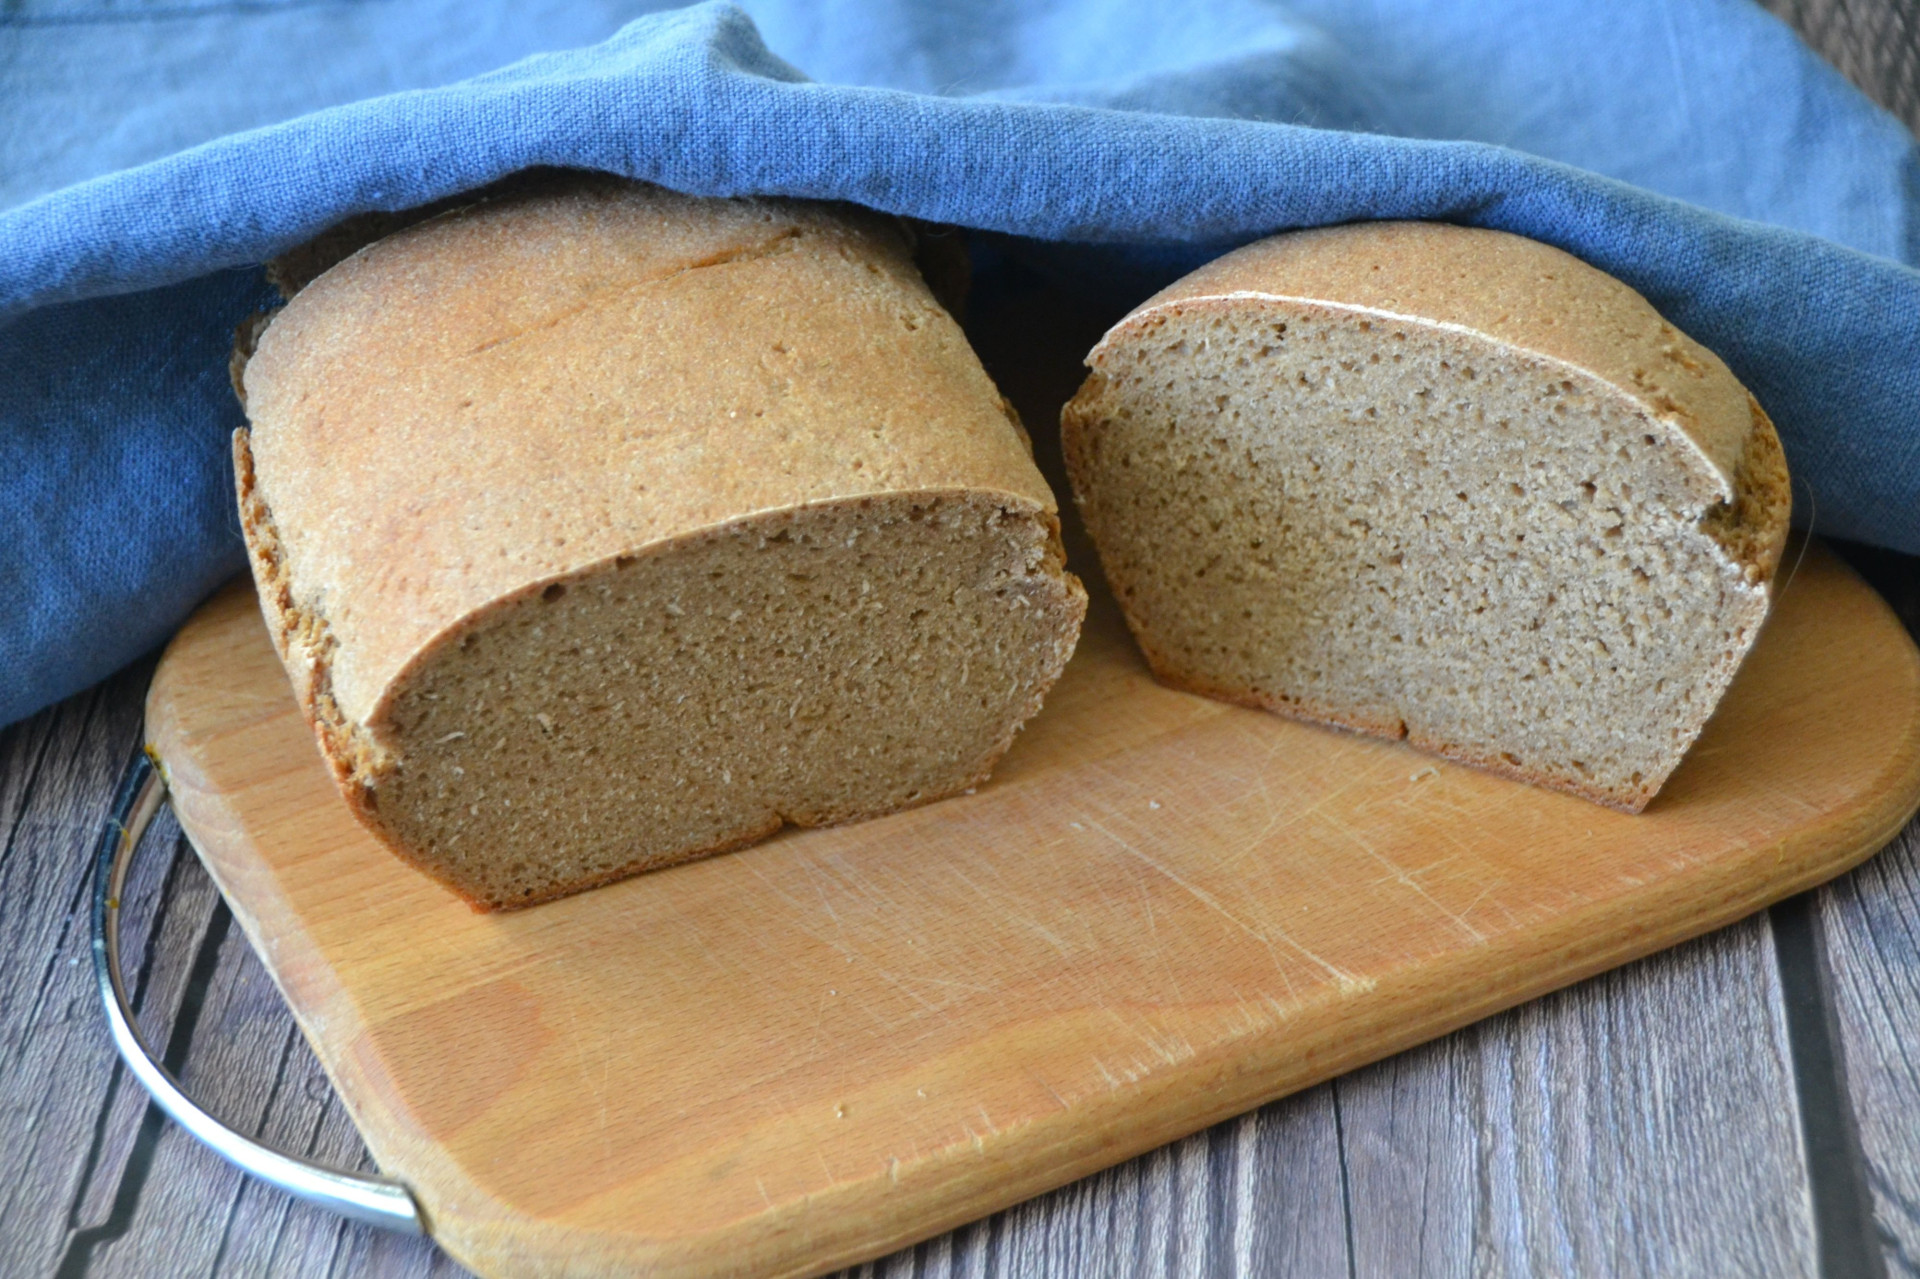 Рецепт орловского хлеба по госту